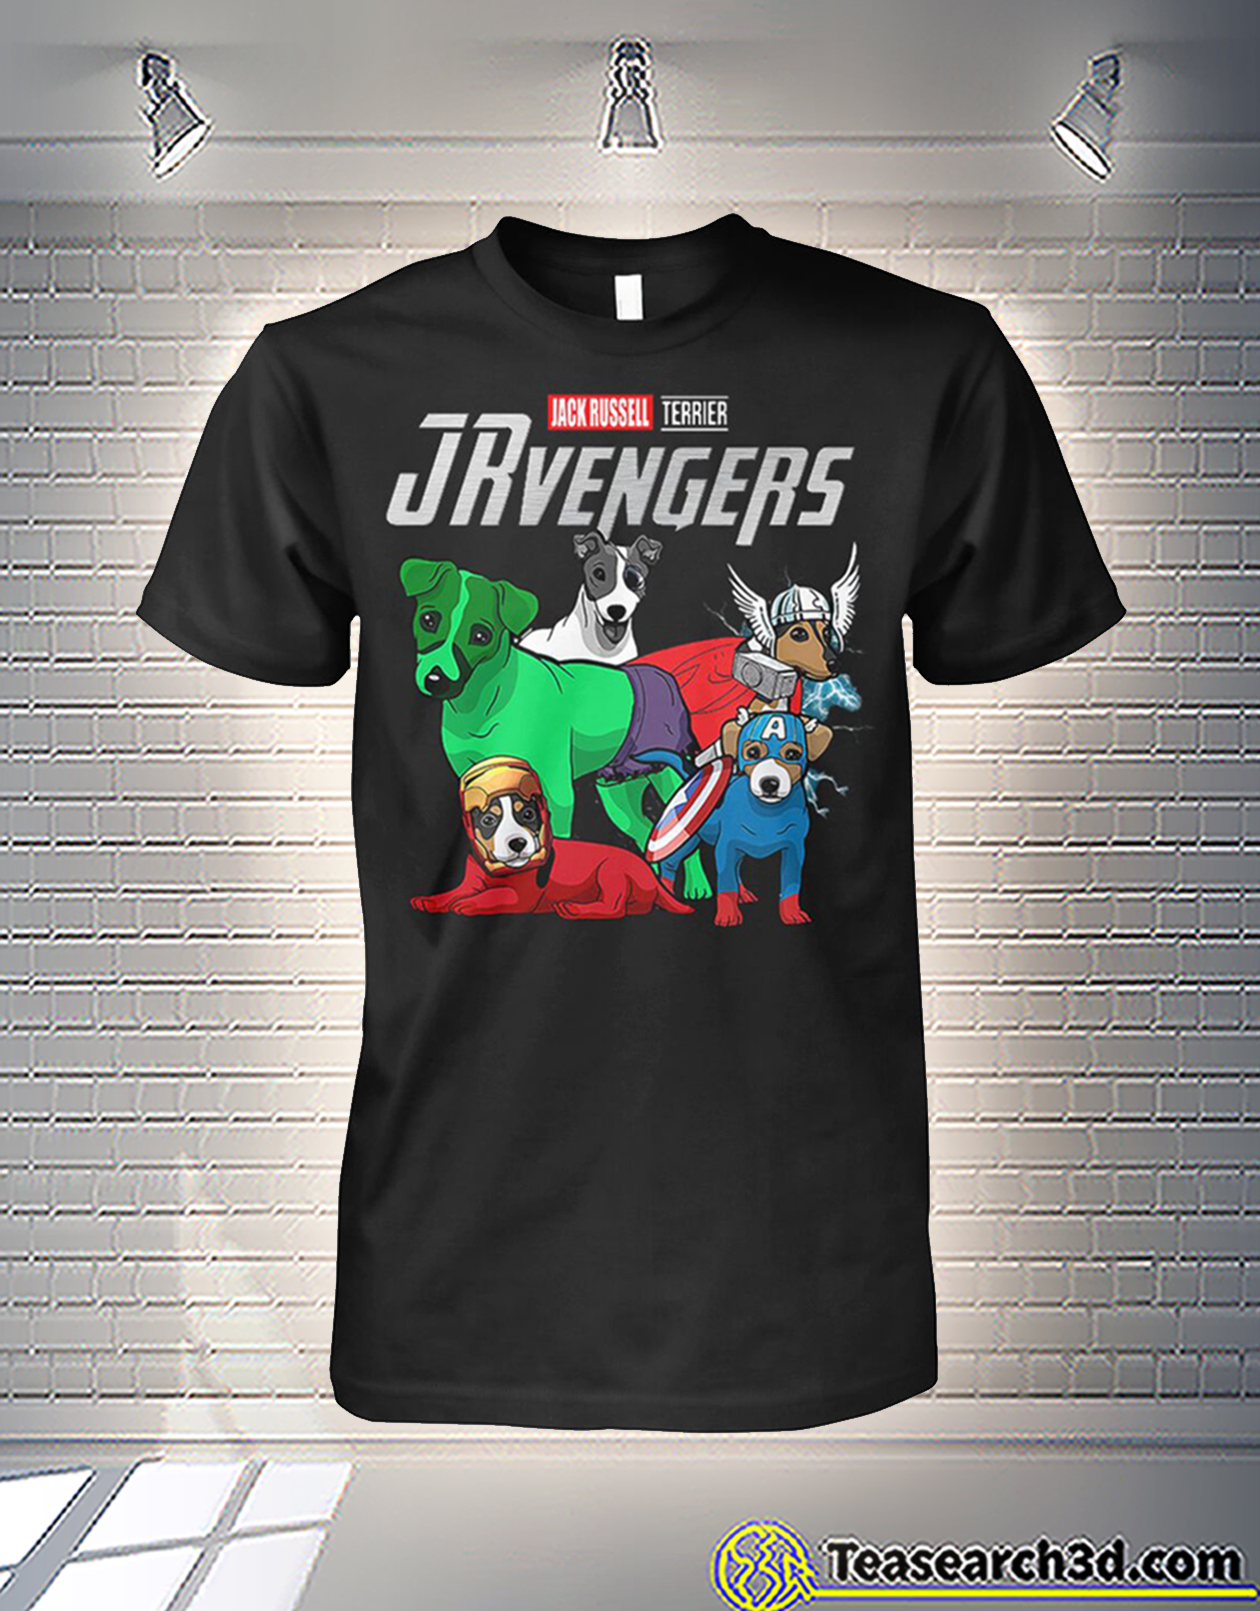 Jack Russell terrier jrvengers avengers shirt